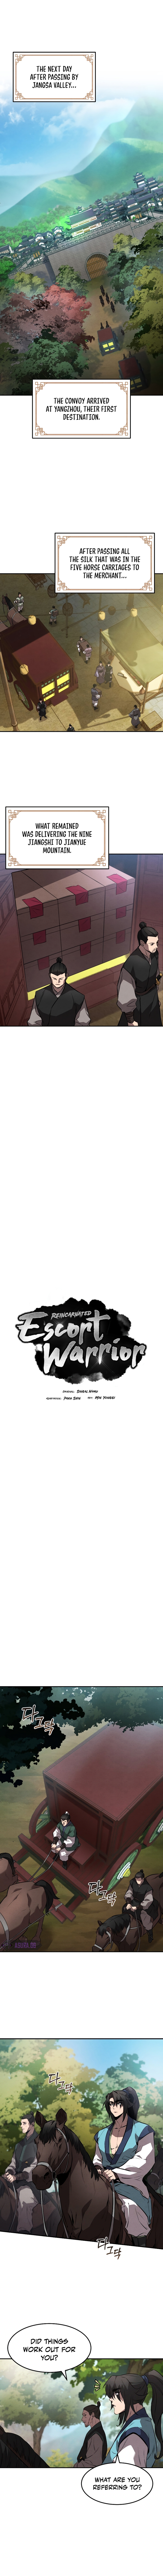 Reincarnated Escort Warrior 26